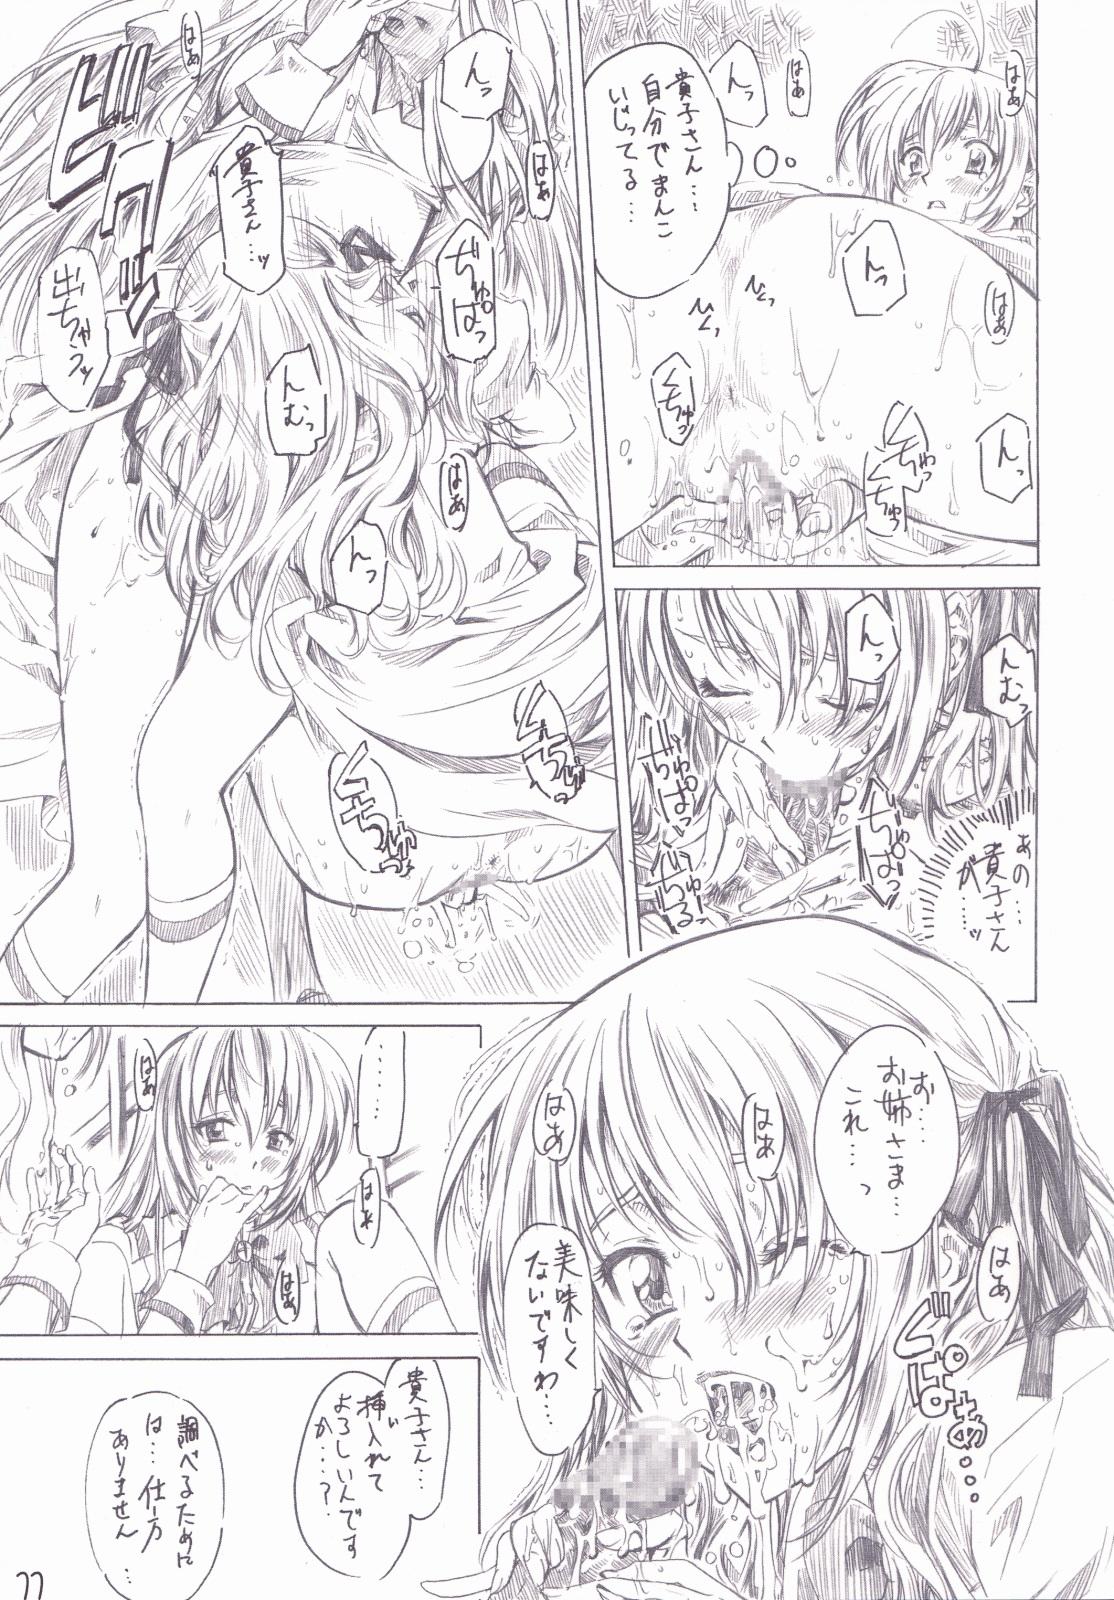 Chicks Otome wa Boku de Nani Shiteru - Otome wa boku ni koishiteru Monster Dick - Page 10